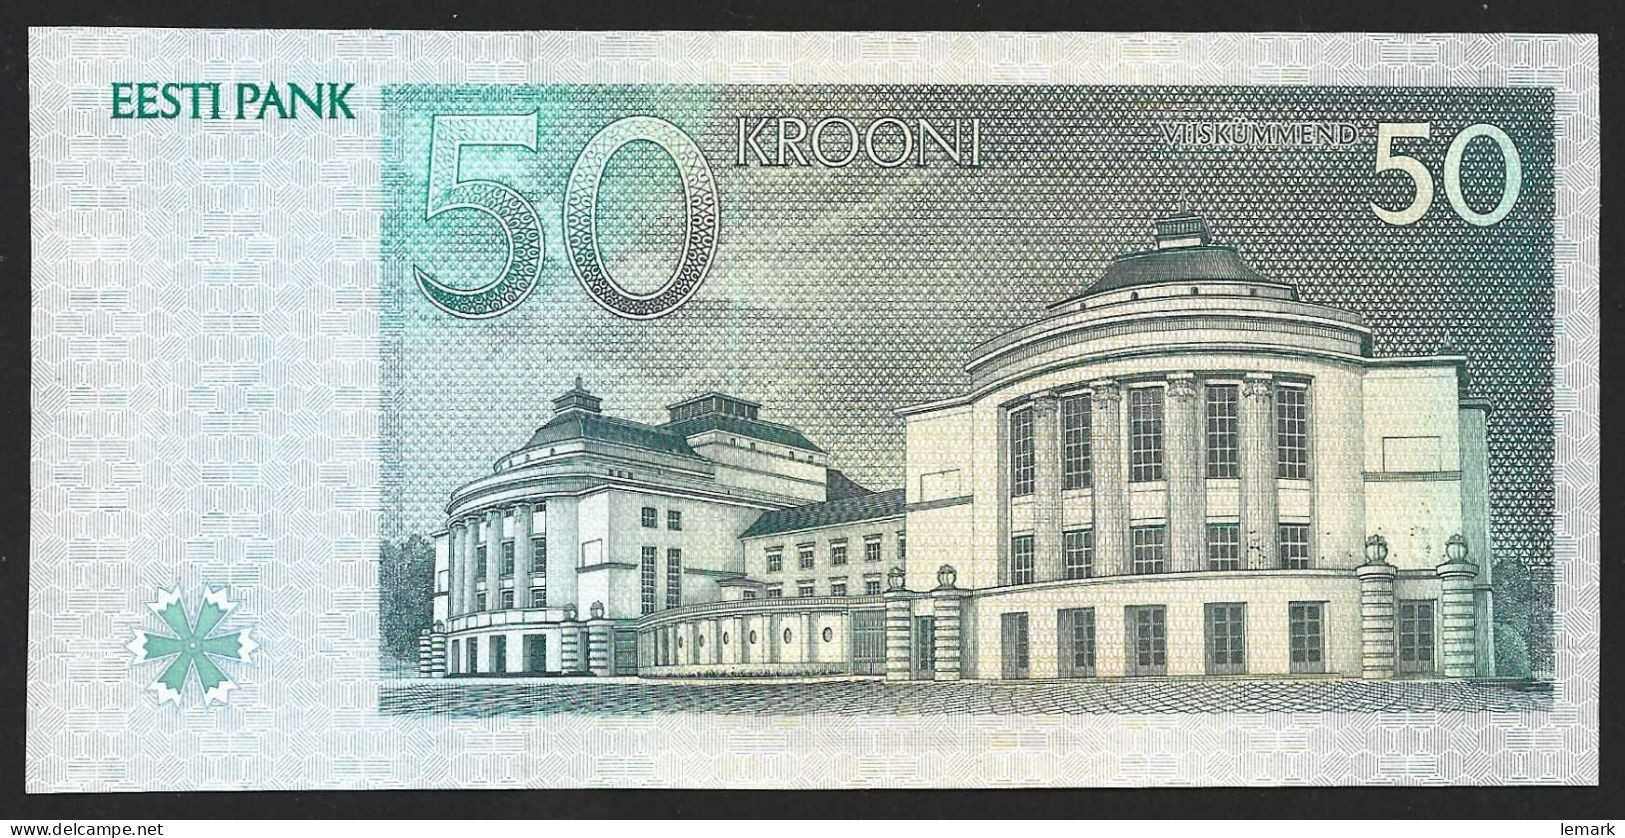 Estonia 50 Krooni 1994 P78 AN030127 A - Estland